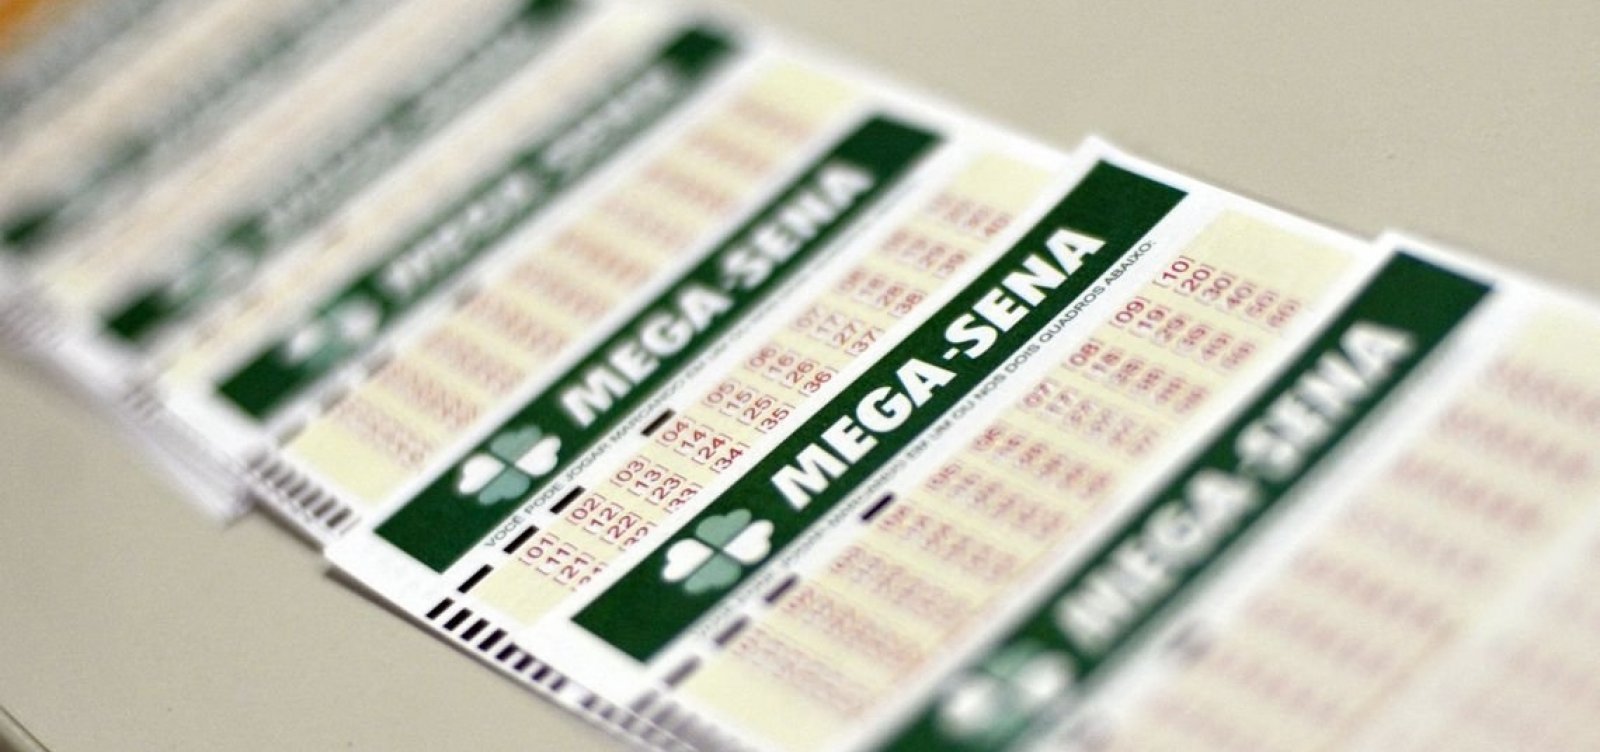 Mega-Sena sorteia prêmio de R$ 3 milhões neste sábado